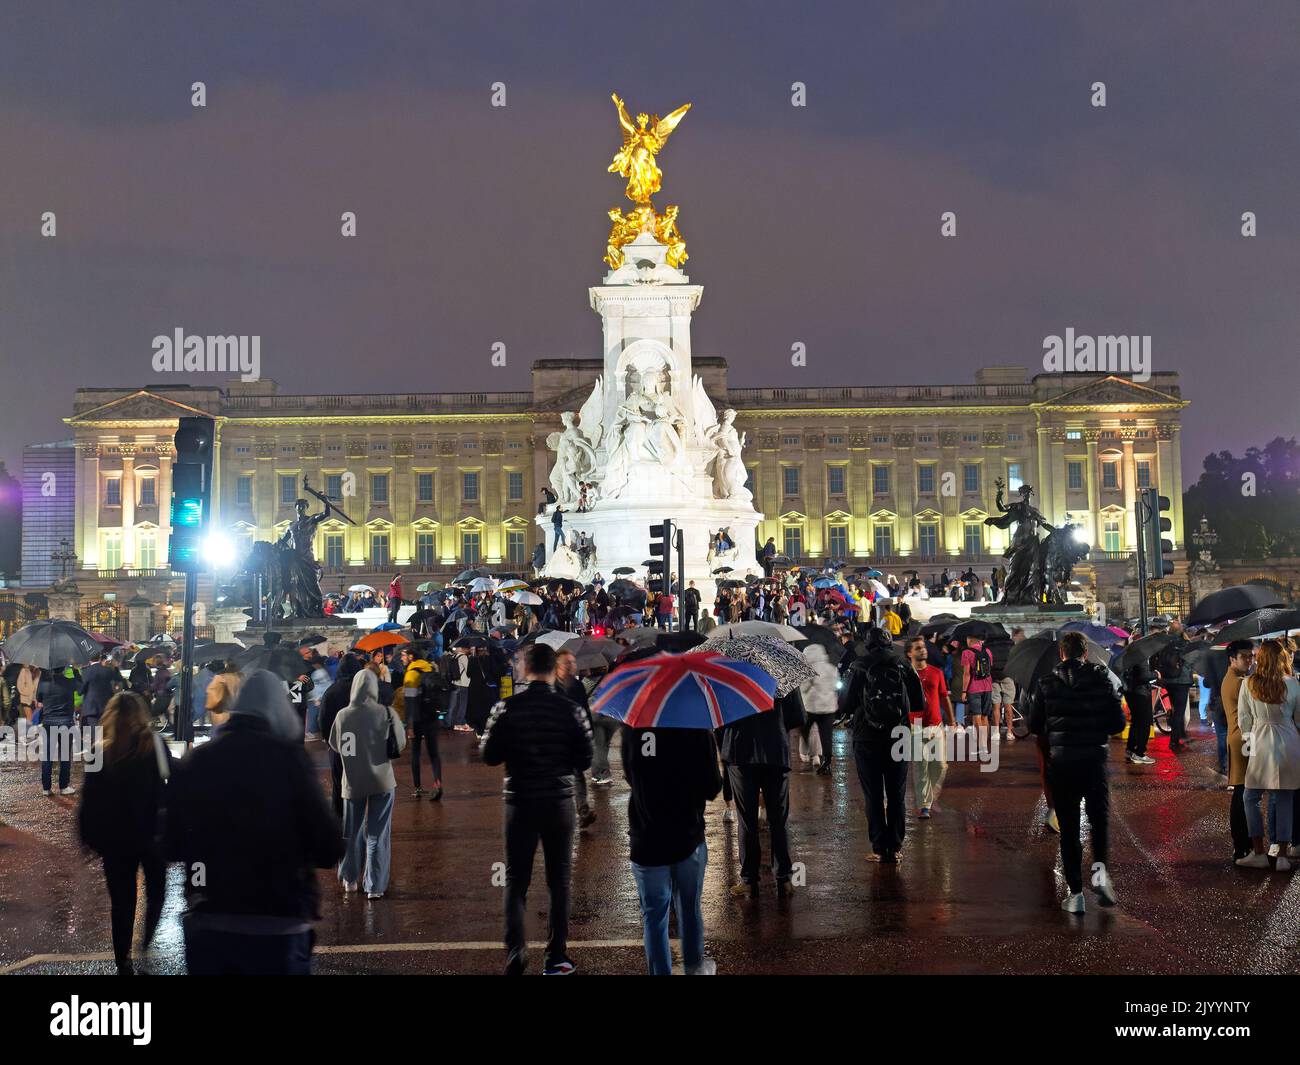 Vista de las multitudes que se reúnen bajo la lluvia en el centro comercial a las afueras del Palacio de Buckingham tras la muerte de la Reina Isabel II el 8 de septiembre de 2022 Foto de stock